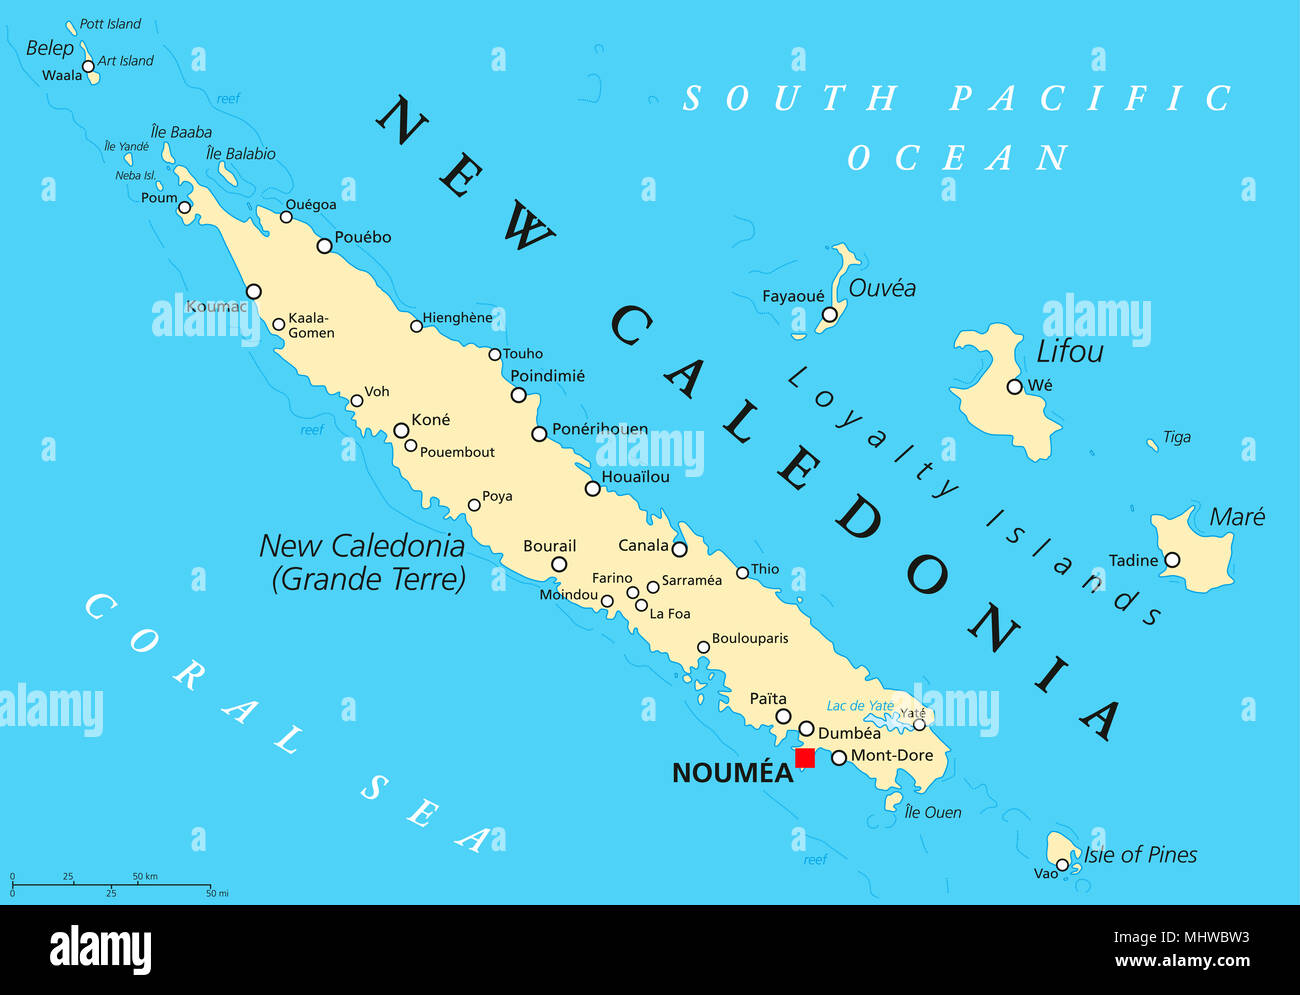 Nuova Caledonia mappa politico con capitale Noumea. Collettività speciale della Francia nell'Oceano Pacifico. Arcipelago con isola principale Grand terre. Foto Stock